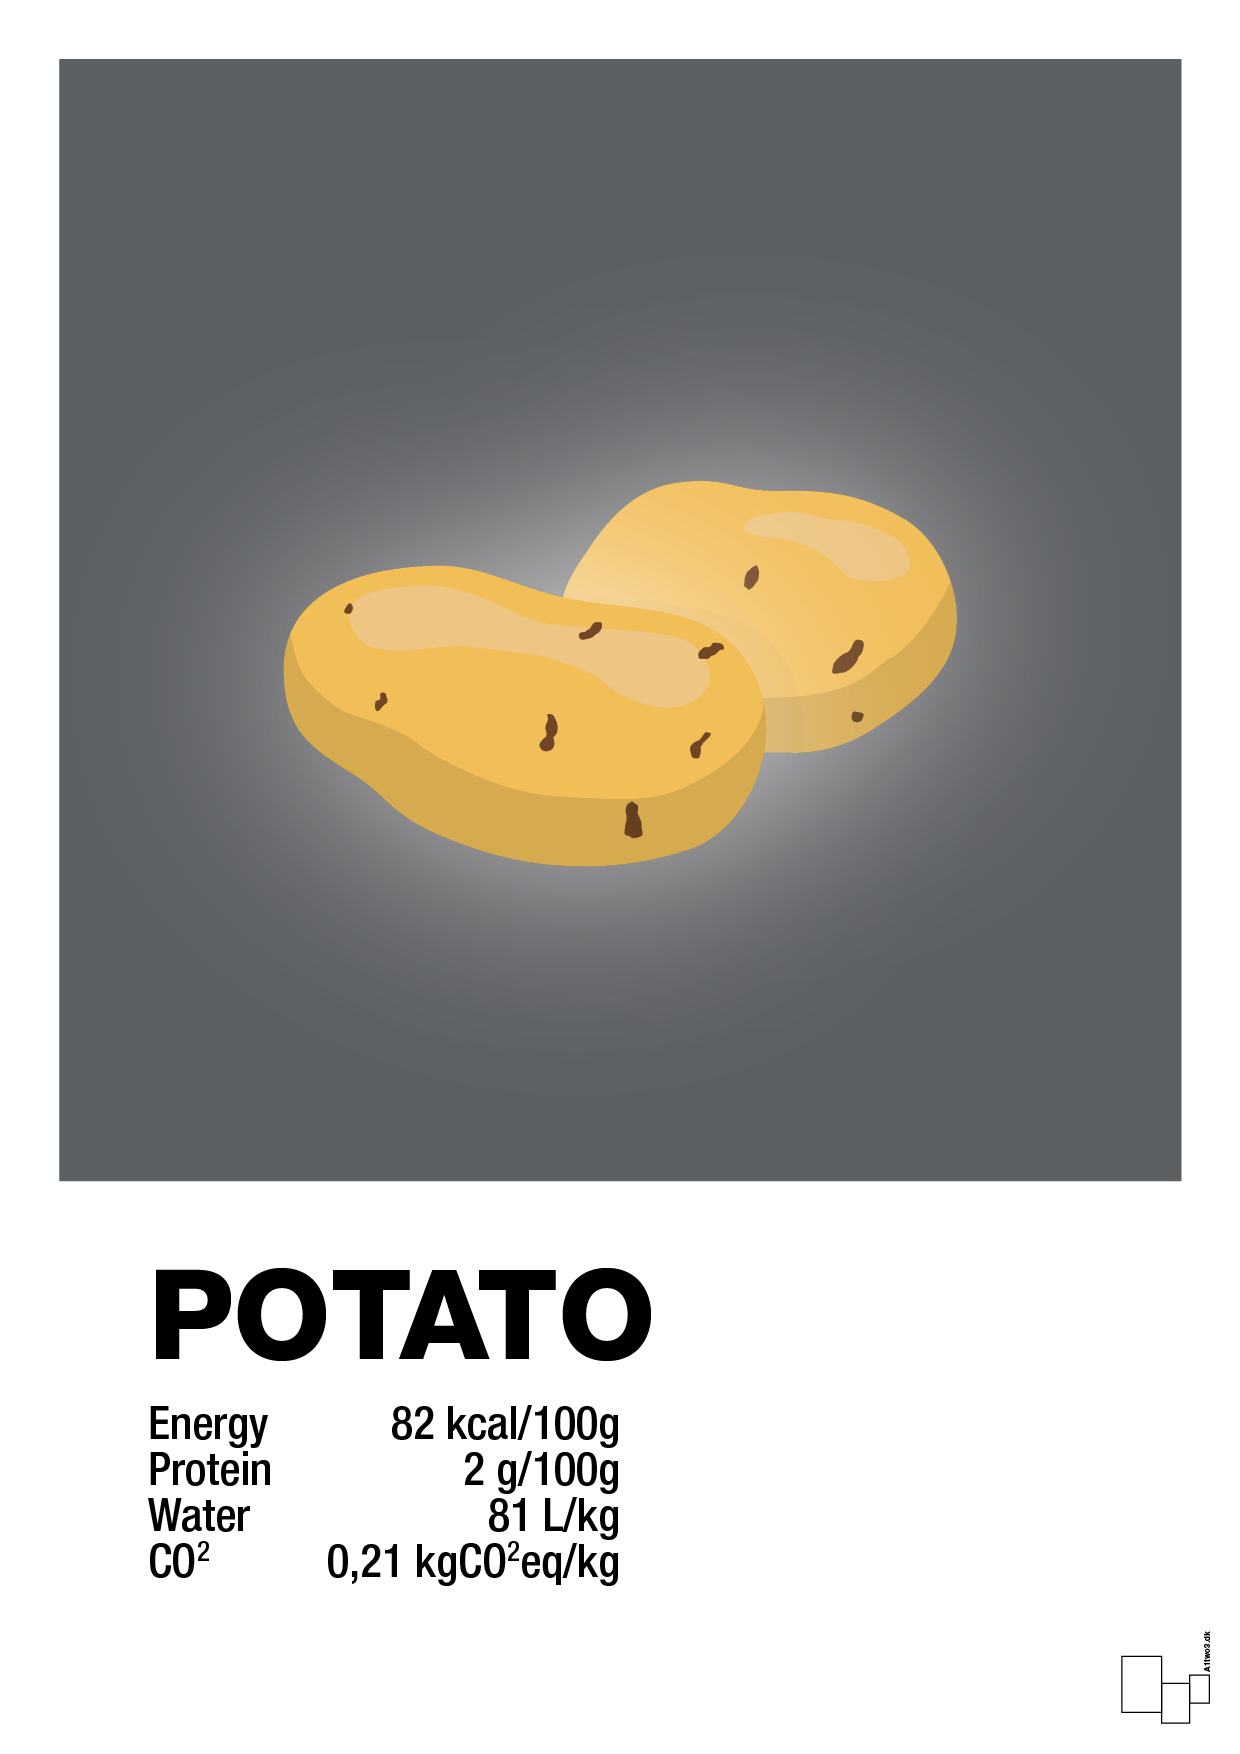 potato nutrition og miljø - Plakat med Mad & Drikke i Graphic Charcoal